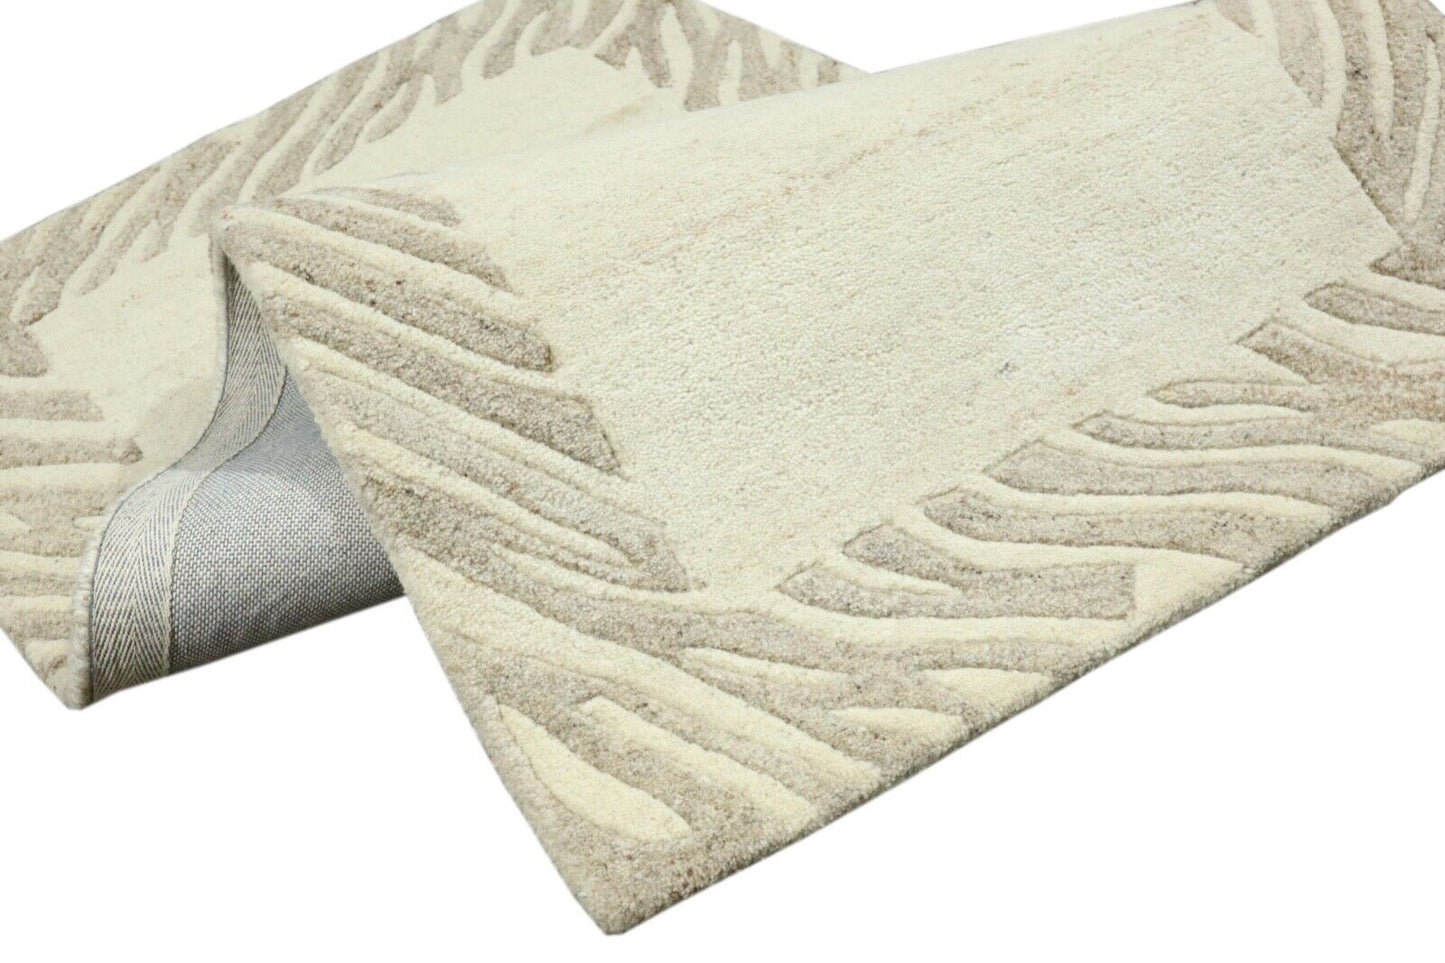 Gabbeh Teppich 100% Wolle 70X140 cm Handarbeit Grau Beige Handgetuftet T1010